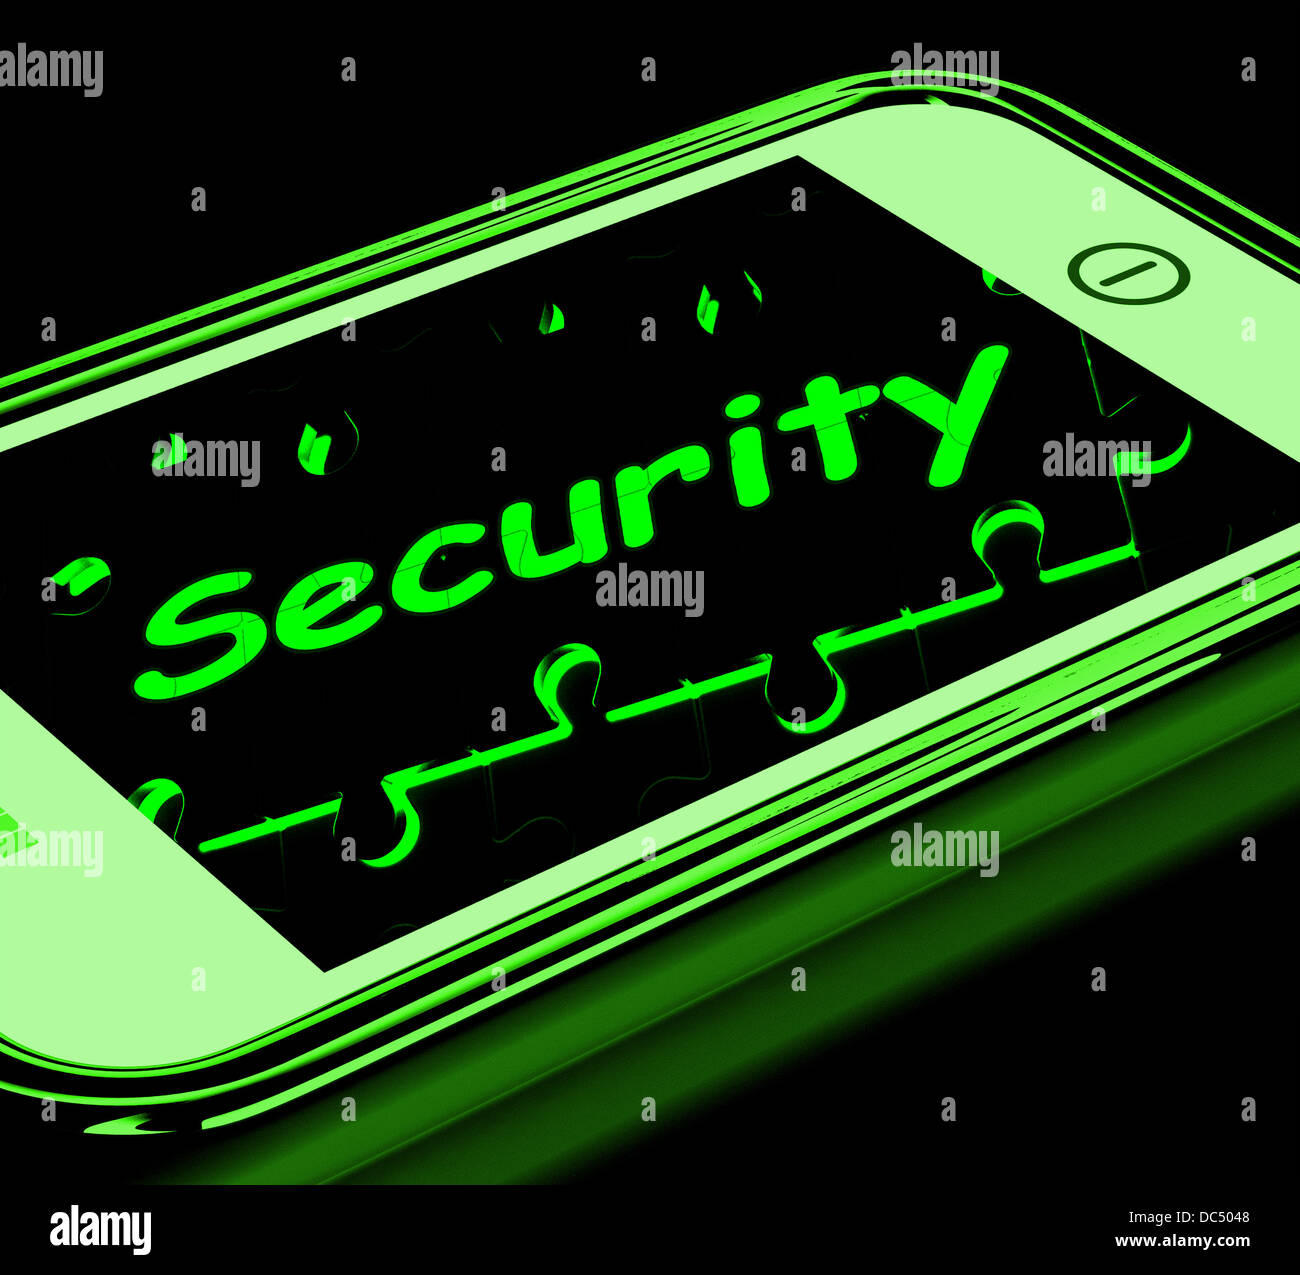 La sécurité sur smartphone affiche un mot de passe sécurisé Banque D'Images